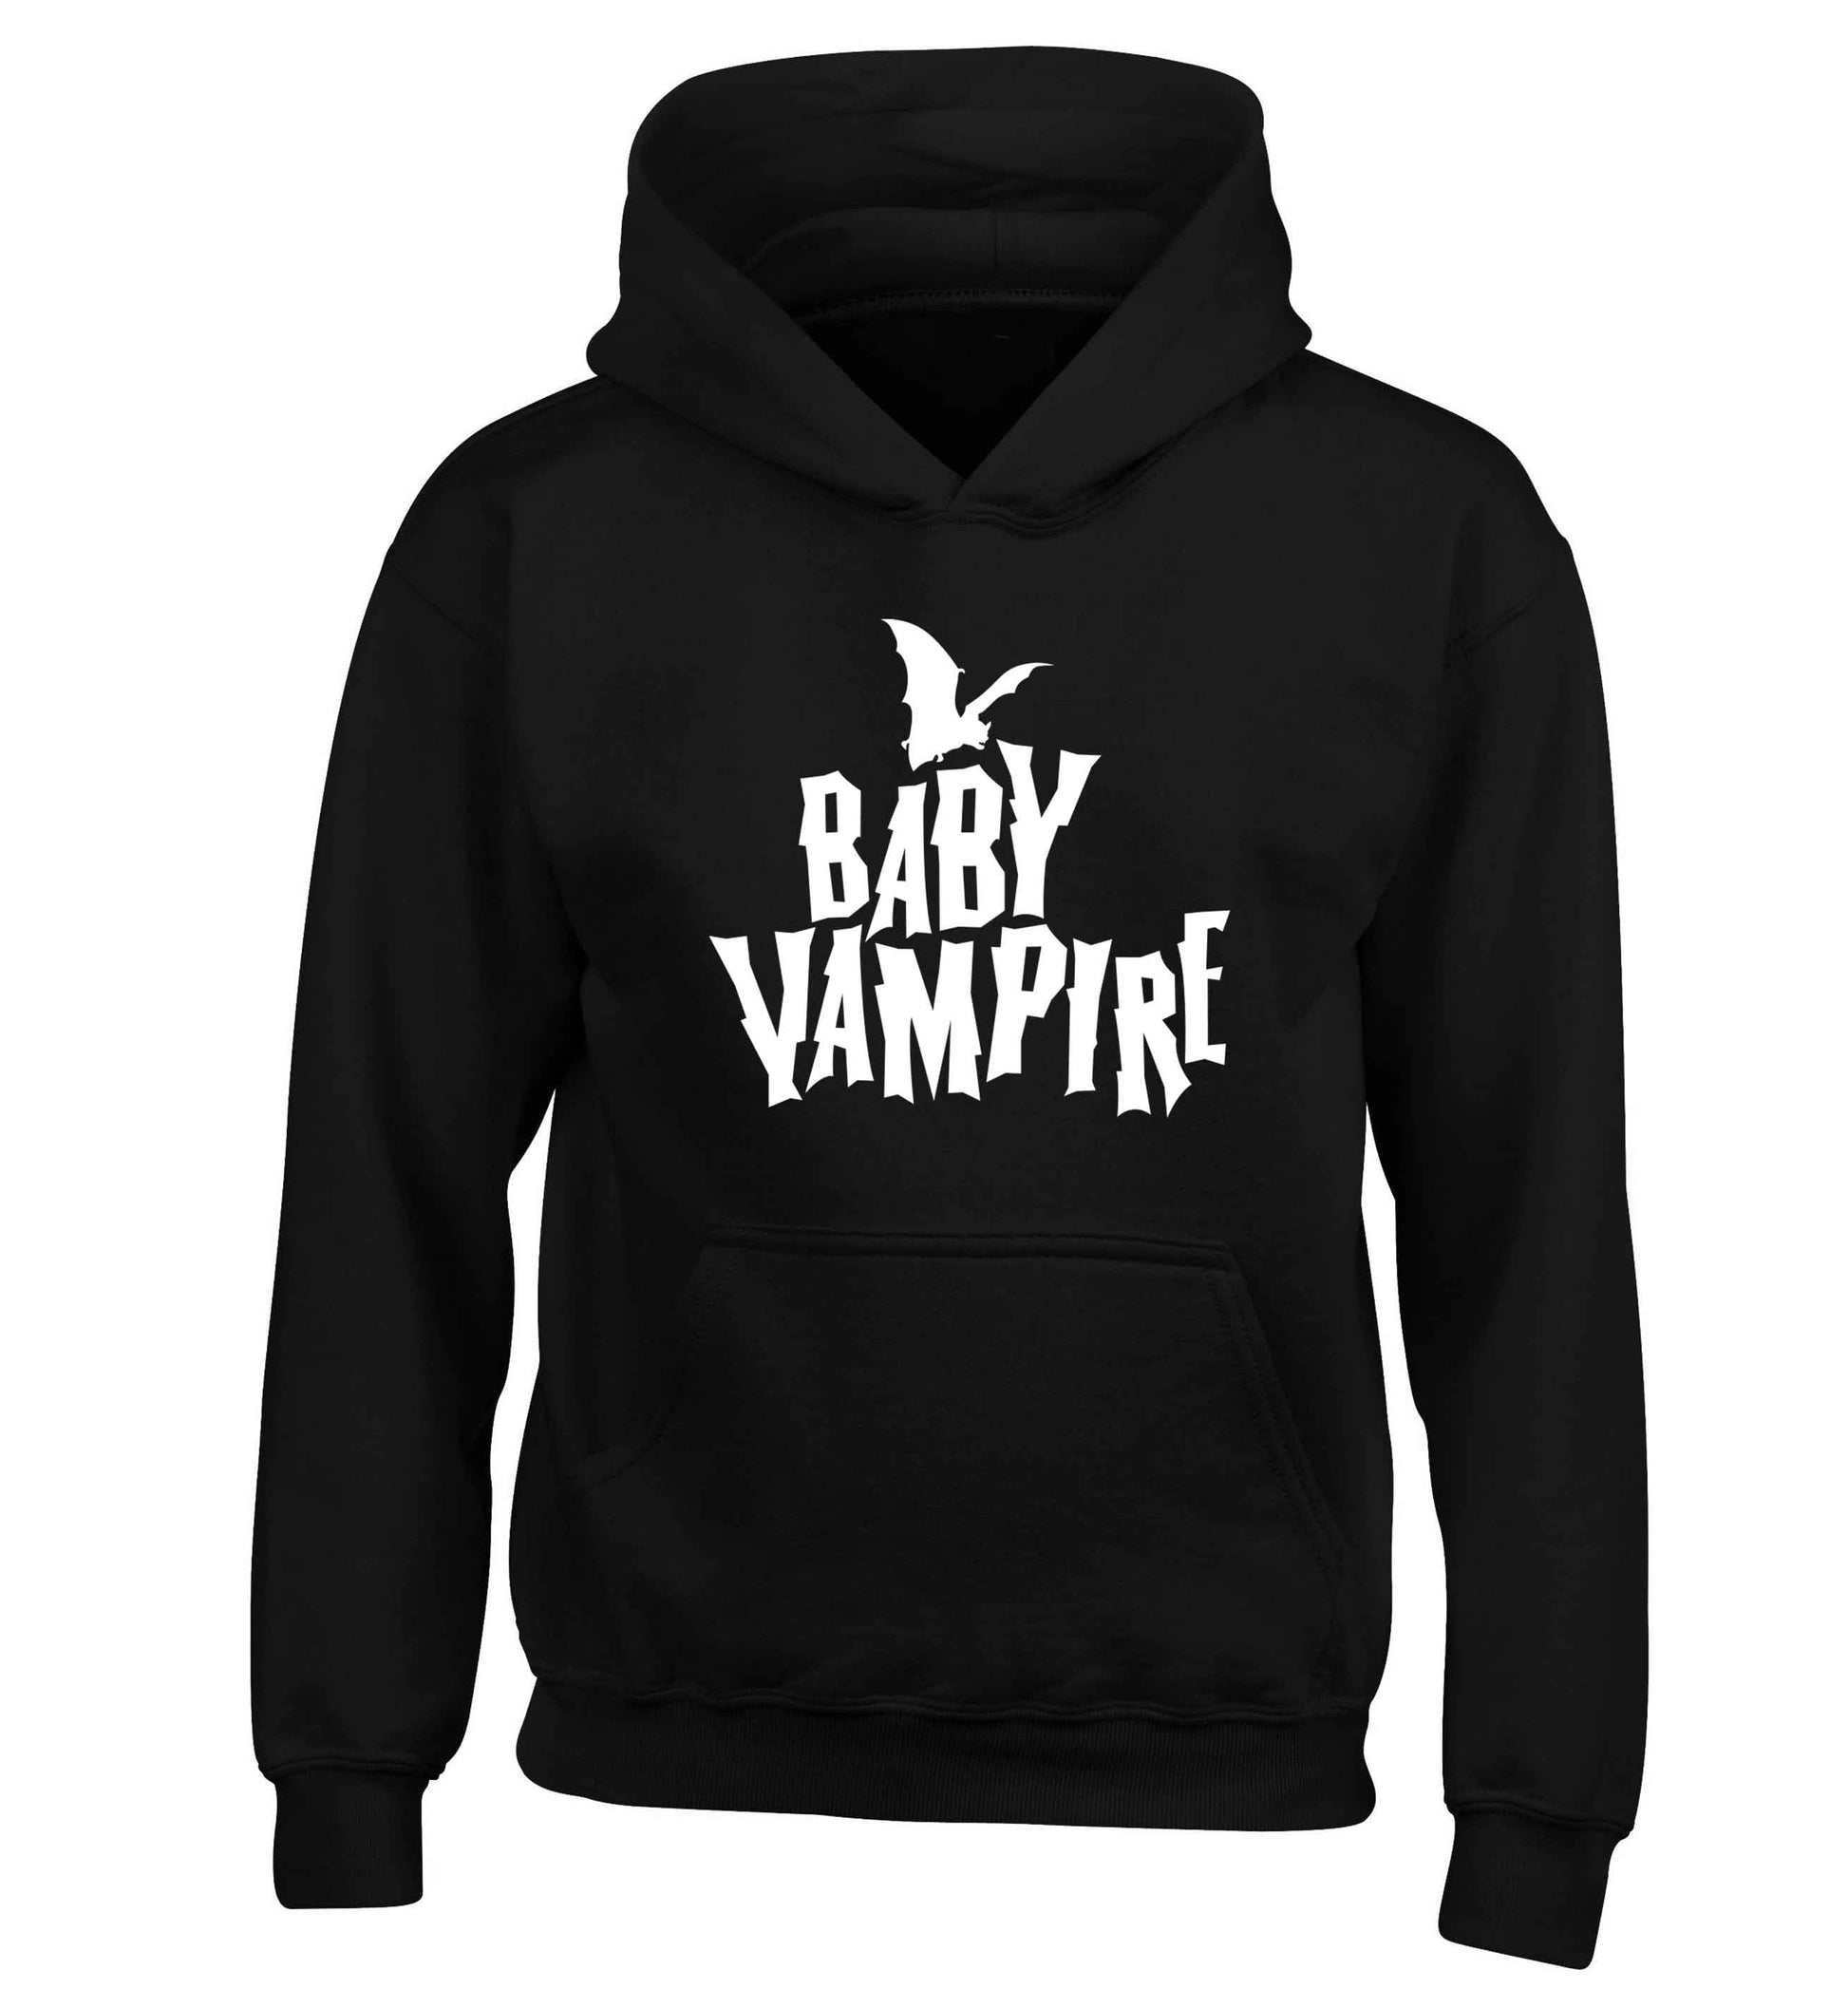 Baby vampire children's black hoodie 12-13 Years